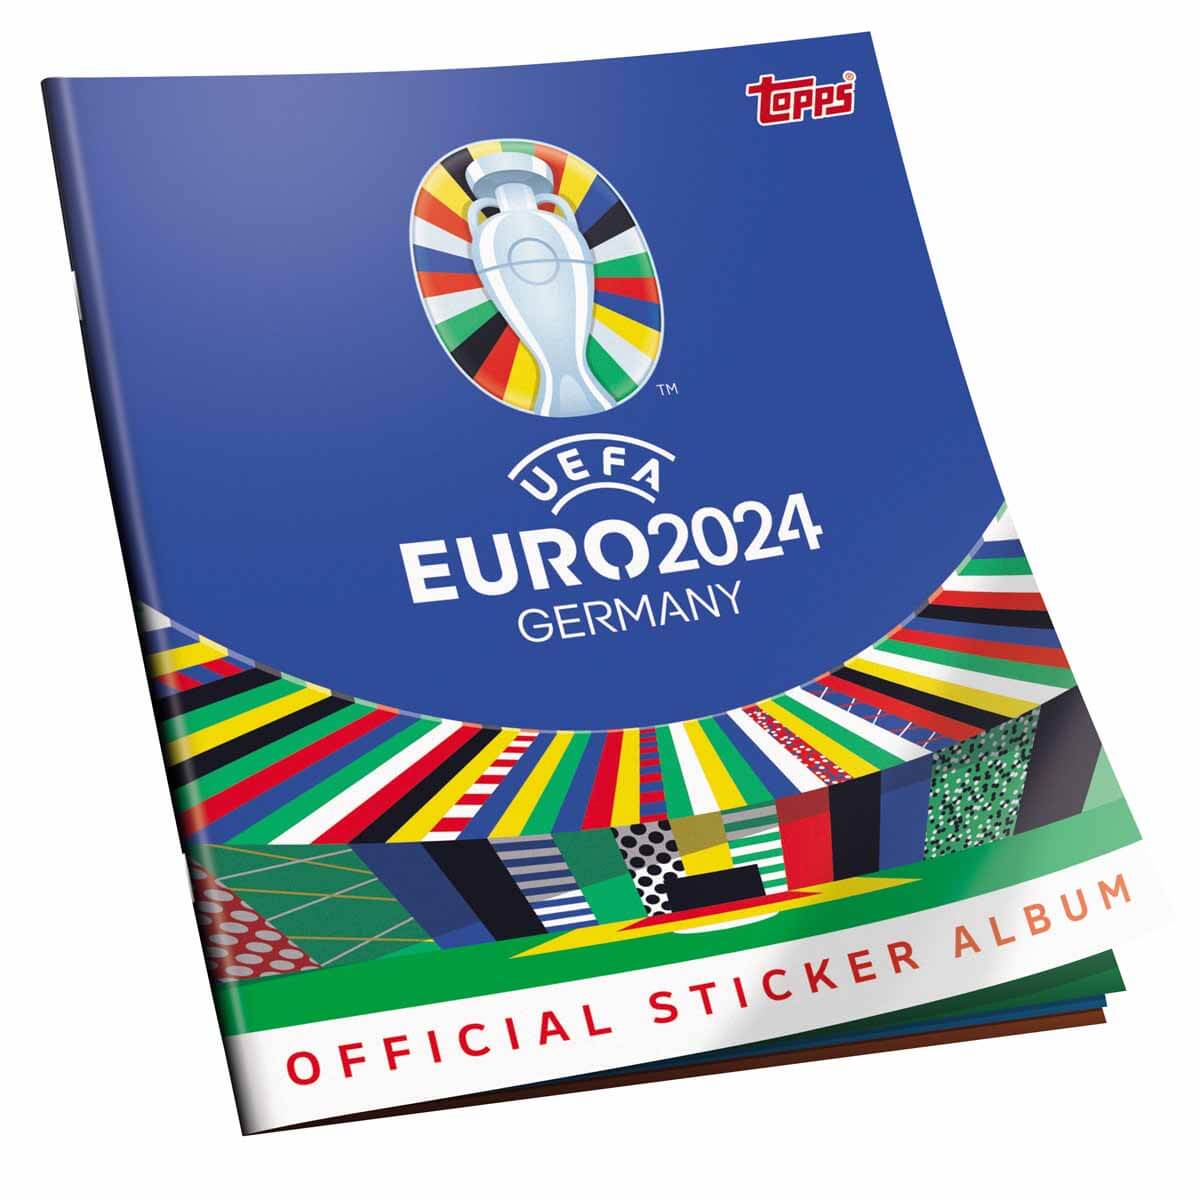 Album si cartonase cu jucatori de fotbal, Topps, UEFA EURO 2024